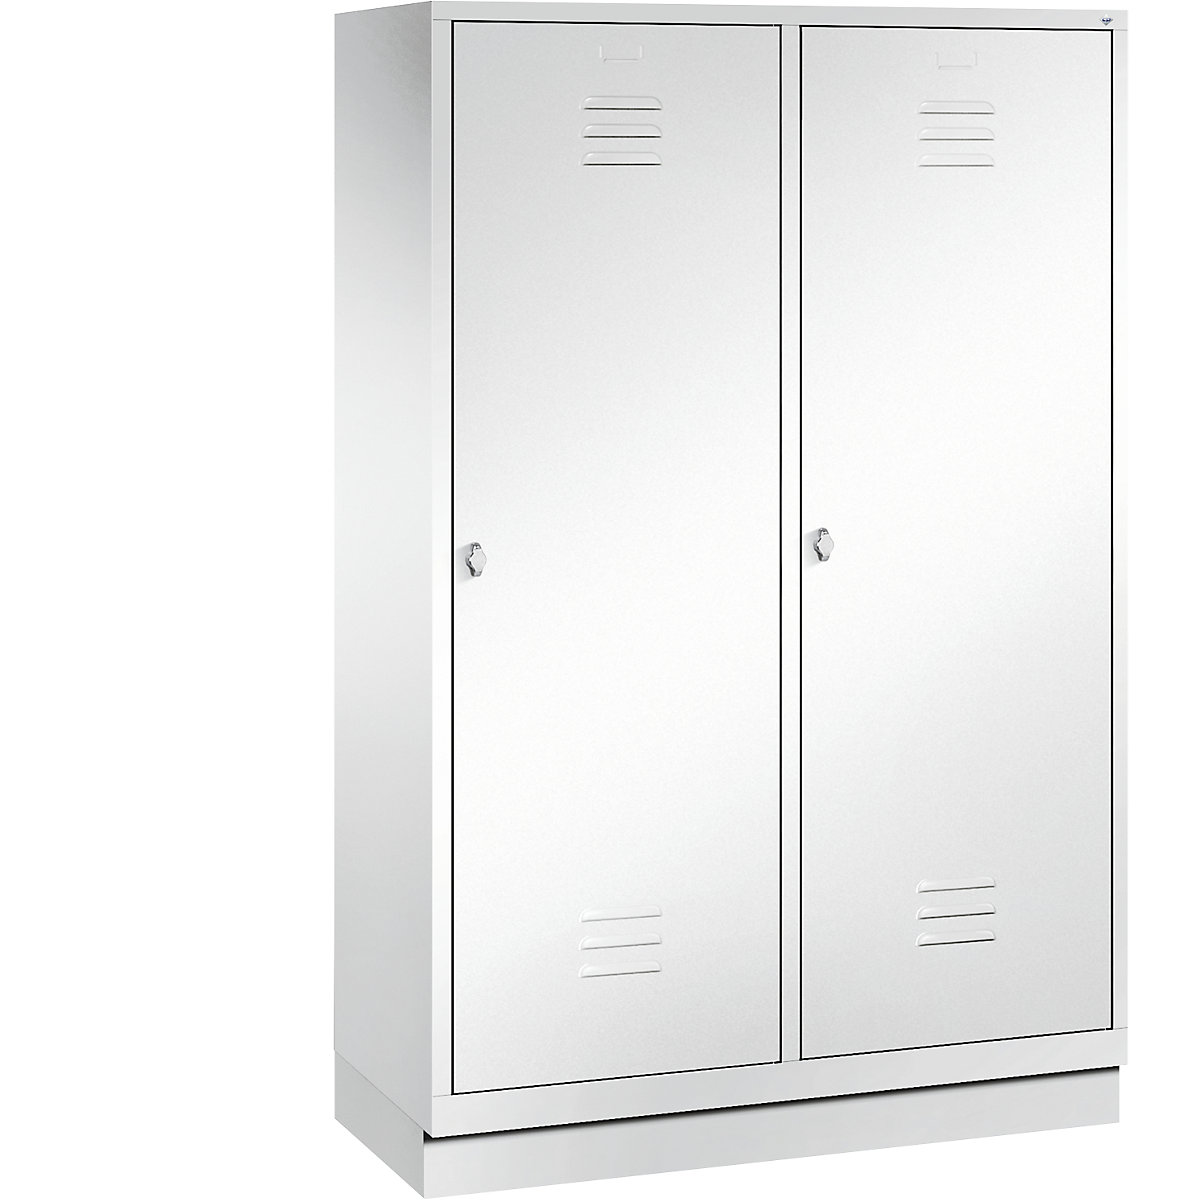 Šatní skříň se soklem CLASSIC s dveřmi přes 2 oddíly – C+P, 4 oddíly, šířka oddílu 300 mm, dopravní bílá